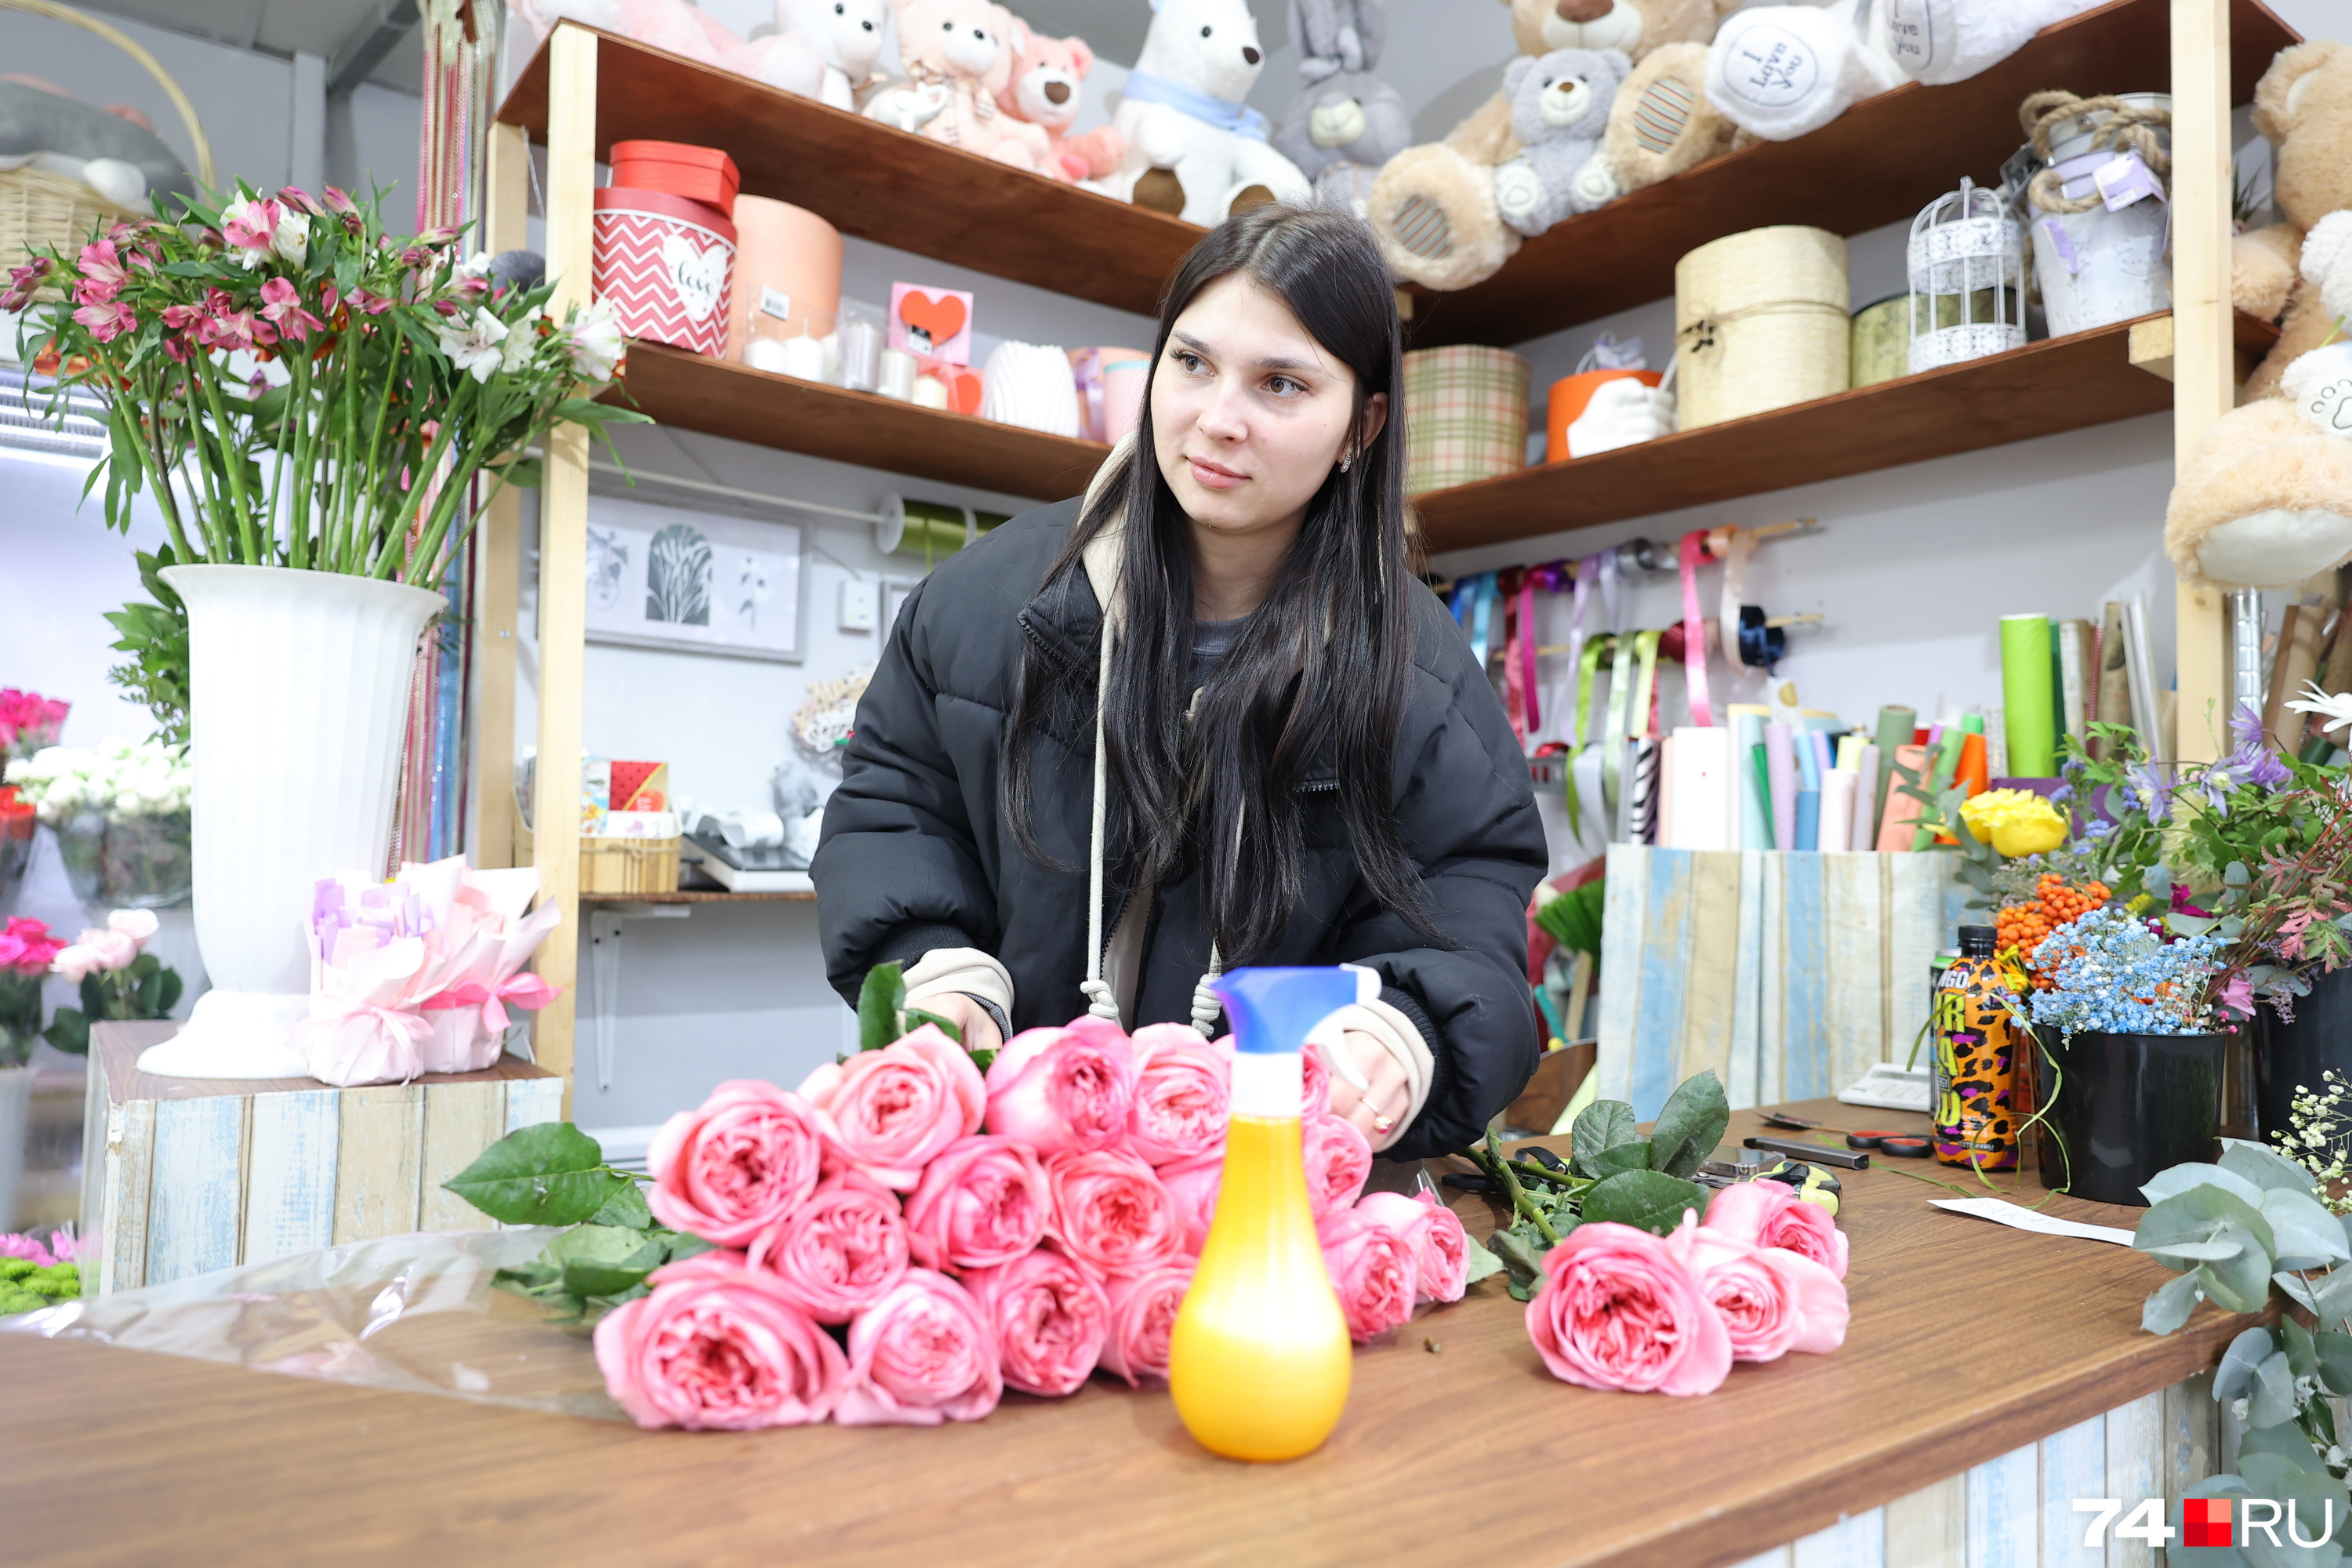 По словам Екатерины, один из клиентов забрал с собой букет из 51 розы!